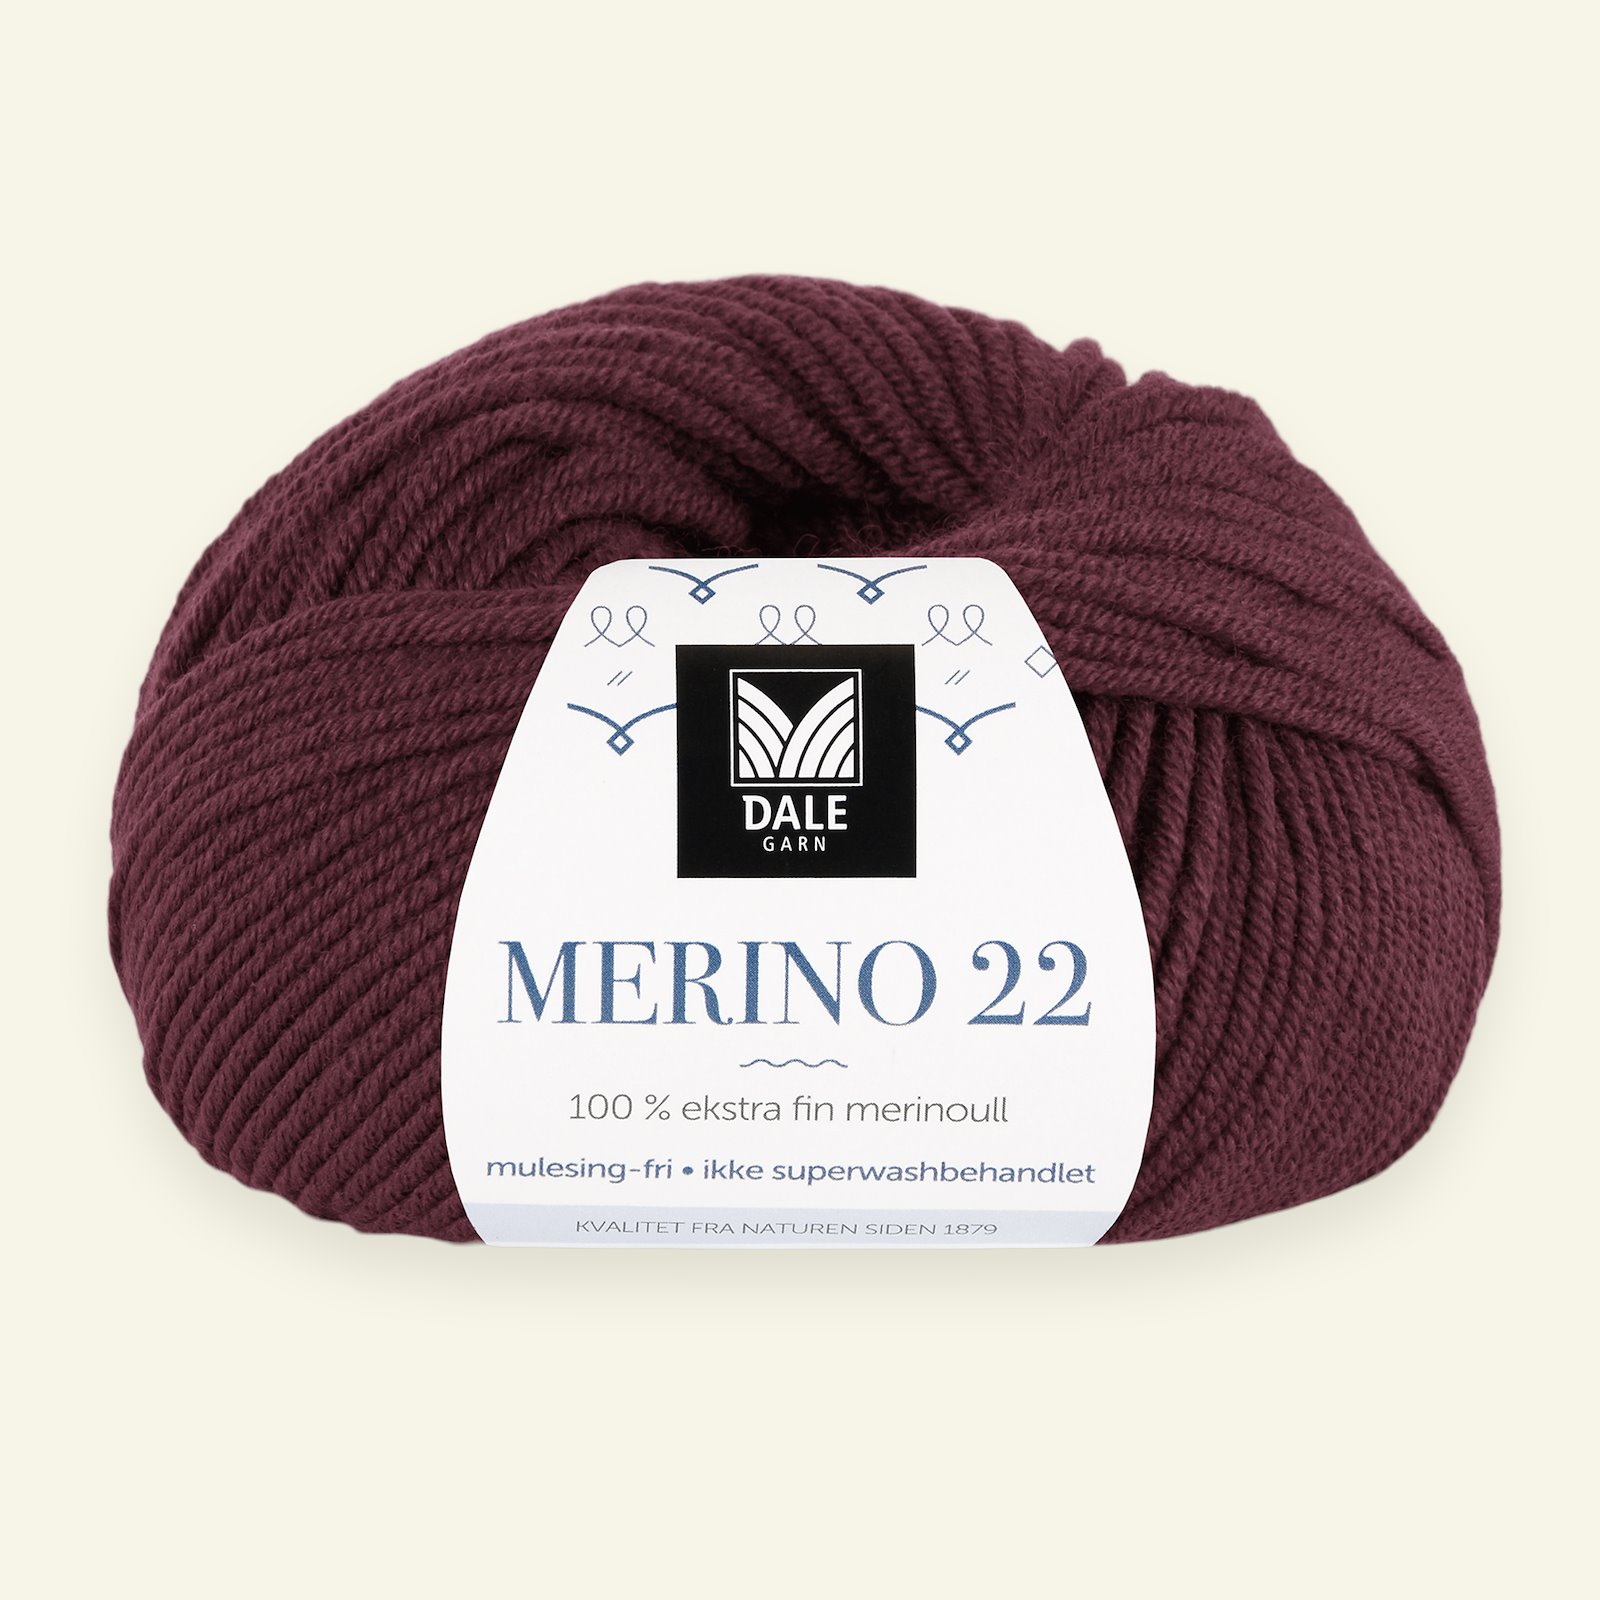 Dale Garn, 100% extra fine merino wool yarn, "Merino 22", bordeaux (2018) 90000379_pack